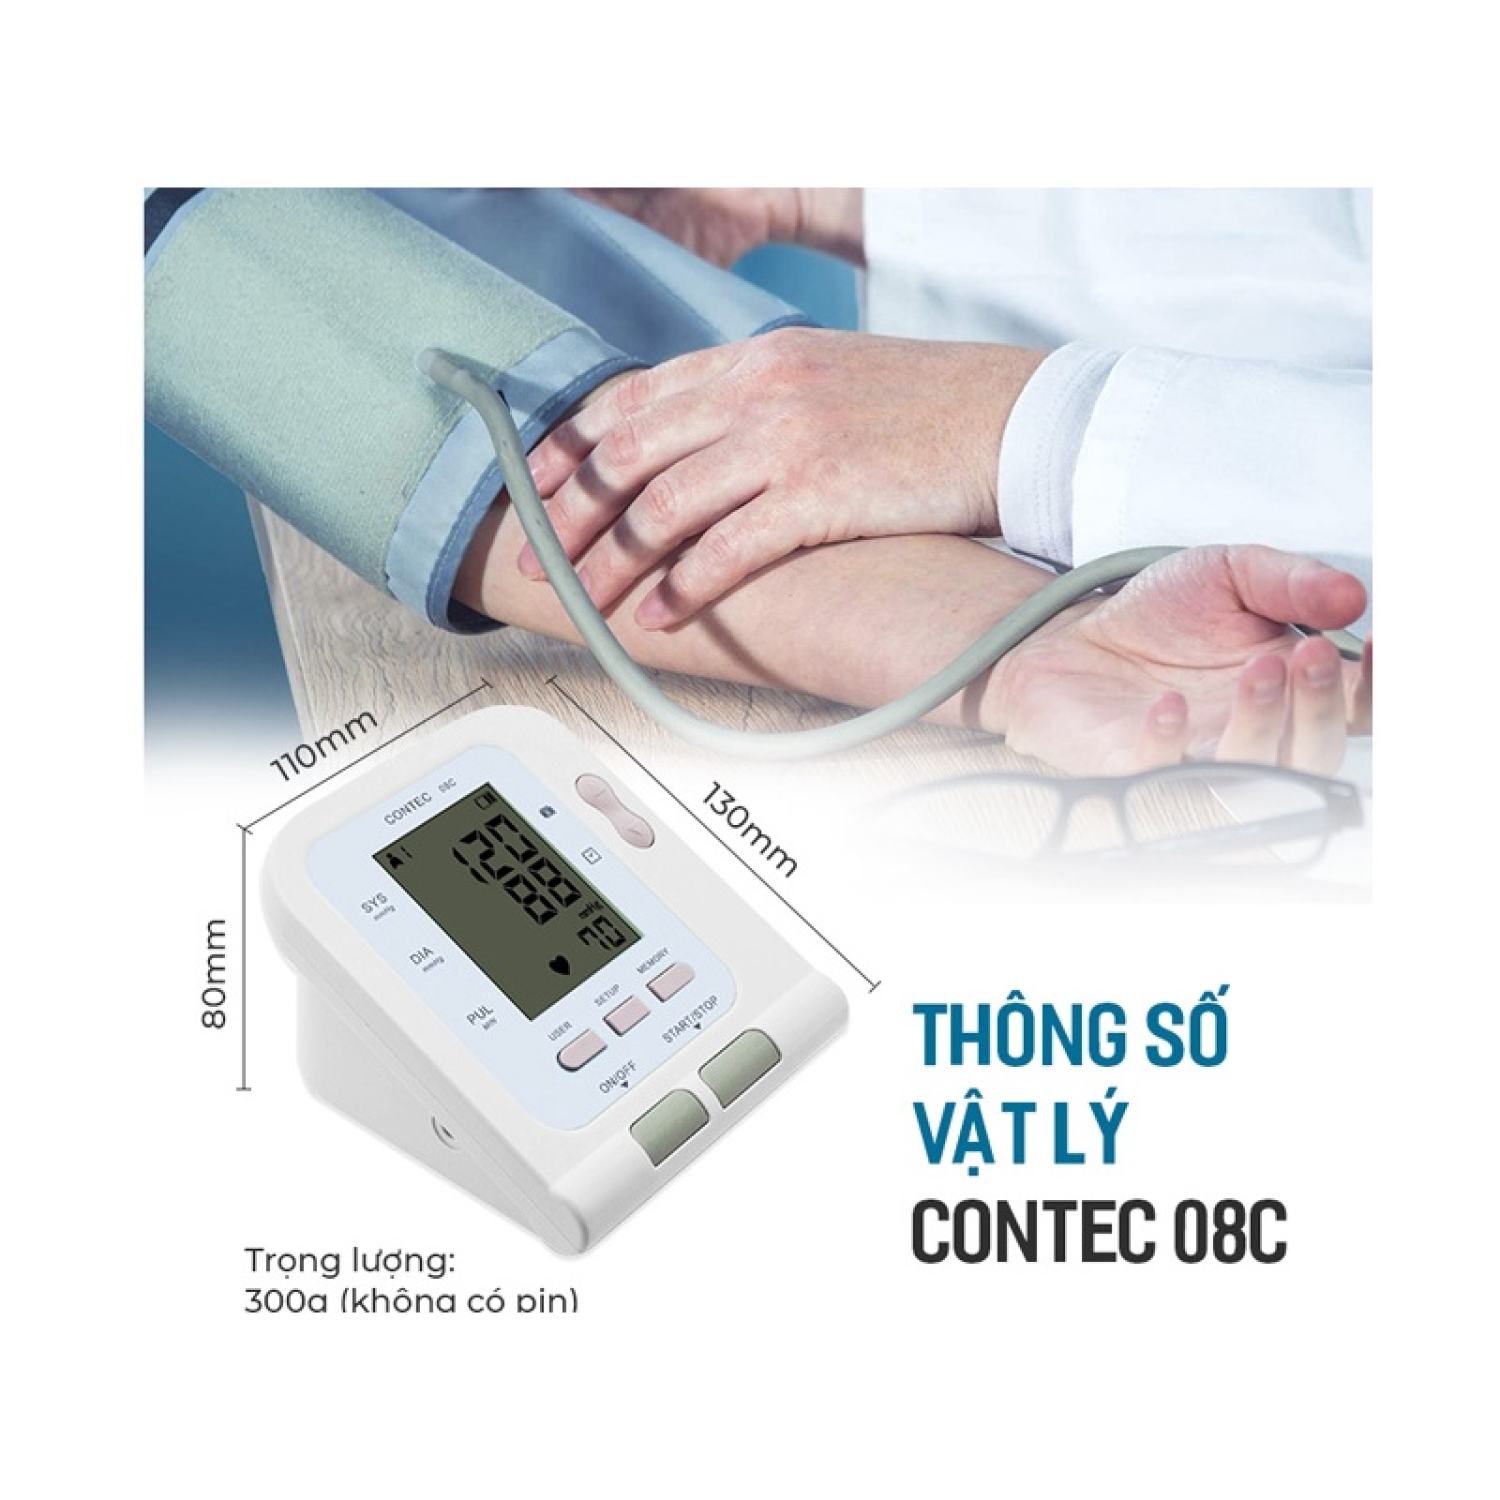 Máy đo huyết áp contec 08c - ảnh sản phẩm 4